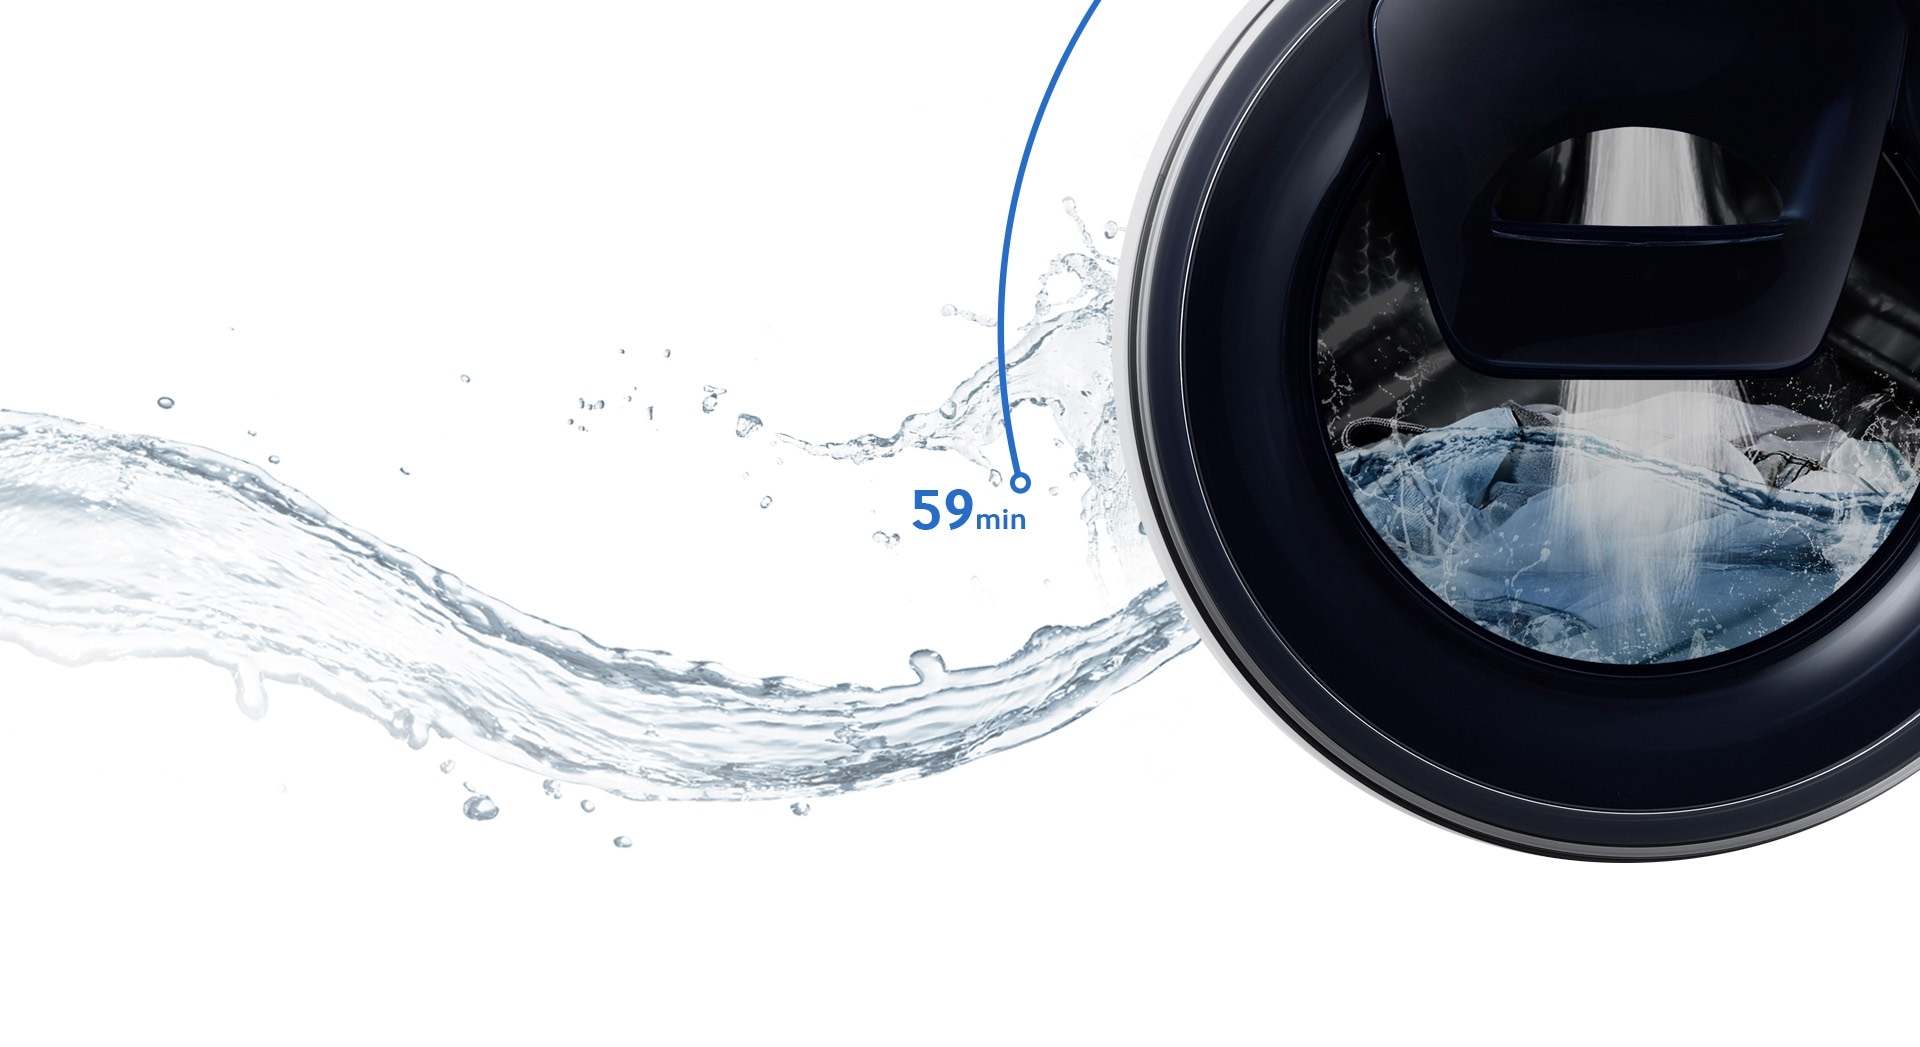 Risultati immagini per Grazie alla tecnologia Ecolavaggio rapido, la nuova lavatrice Samsung Ã¨ in grado di completare il lavaggio in soli 59 minuti. Grazie alla funzione Speed Spray, risciacqua i capi con maggiore efficacia e aumenta la velocitÃ  di centrifuga per completare il lavaggio in soli 59 minuti.*